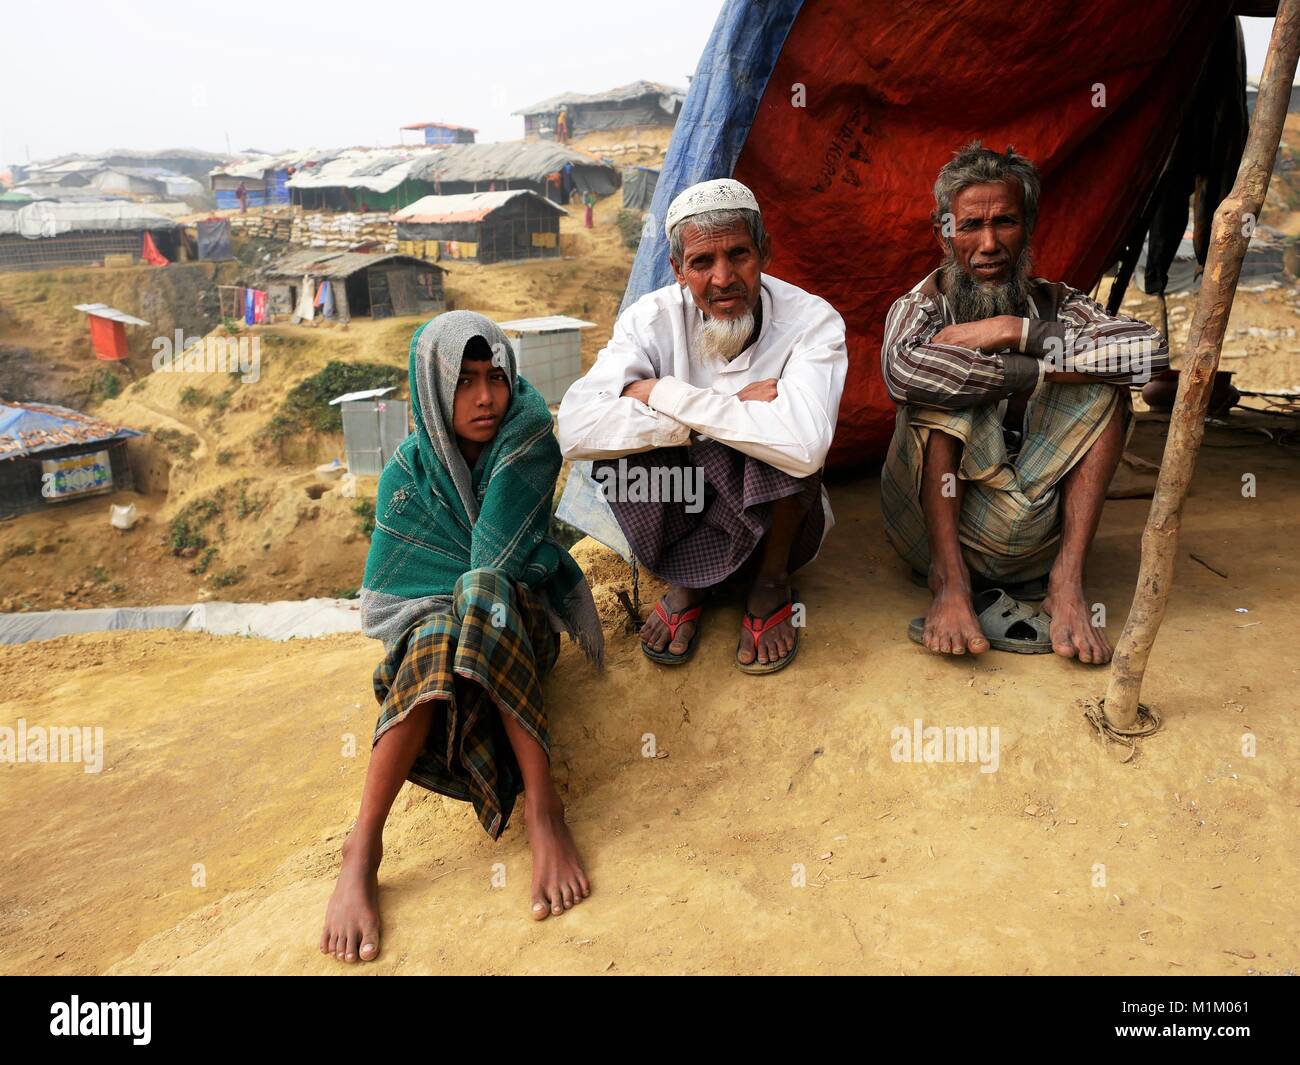 Januar 16, 2018 - Cox's Bazar, Bangladesch - Rohingya Flüchtlinge an der Kutupalong Flüchtlingslager gesehen. Sogar Papst Franziskus war nicht erlaubt, ein Wort ''''Rohingya in Myanmar zu sagen. Mehr als eine Million Rohingya Flüchtlinge, die im August 2017 floh aus Rakhine State in Myanmar gezwungen waren, ihr Leben zu retten von ethnischen Säuberungen leben in sehr einfachen Bedingungen in den Flüchtlingslagern in Bangladesch und ihre Zukunft ist sehr unsicher. Sie haben Angst, nach Hause zurückzukehren - aber Rückführung Vertrag wurde bereits unterzeichnet, sie zur Rückkehr in ihre Heimat, wo sie nicht erwünscht sind. (Bild: © Jana Cavojska/S Stockfoto